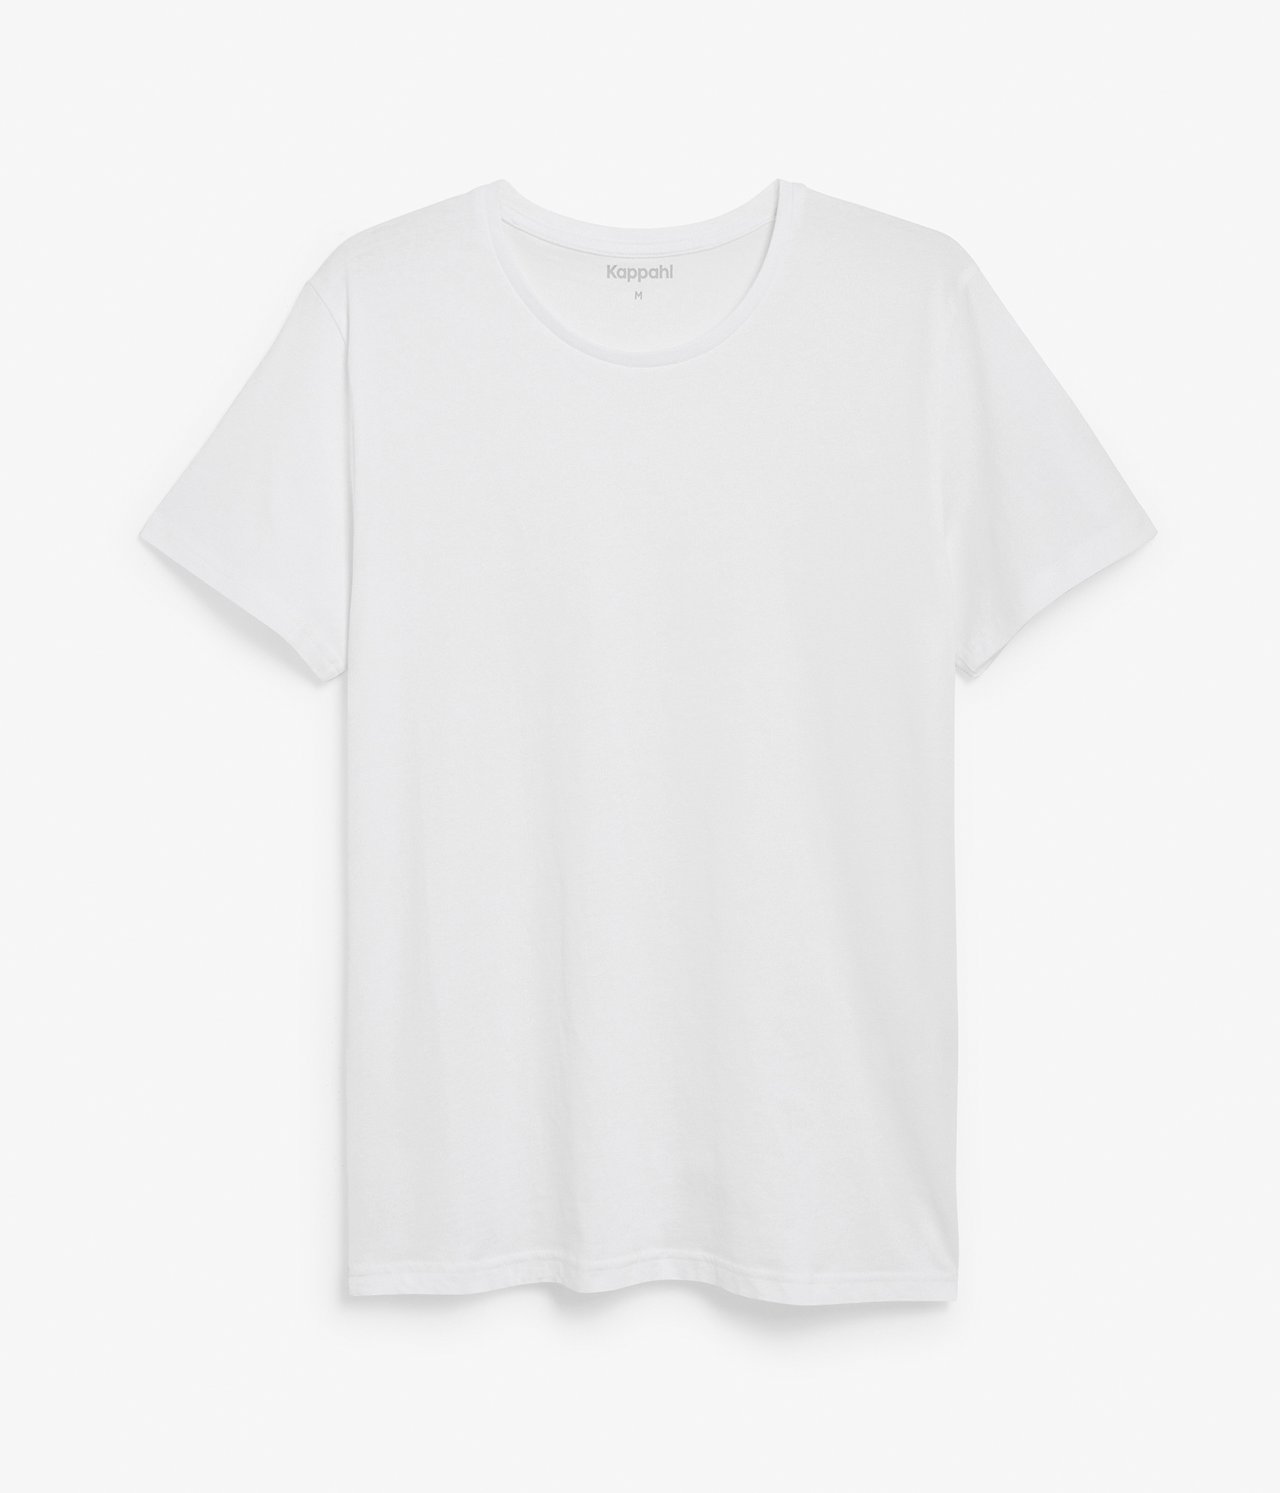 Pyöreäkauluksinen t-paita Valkoinen - null - 5